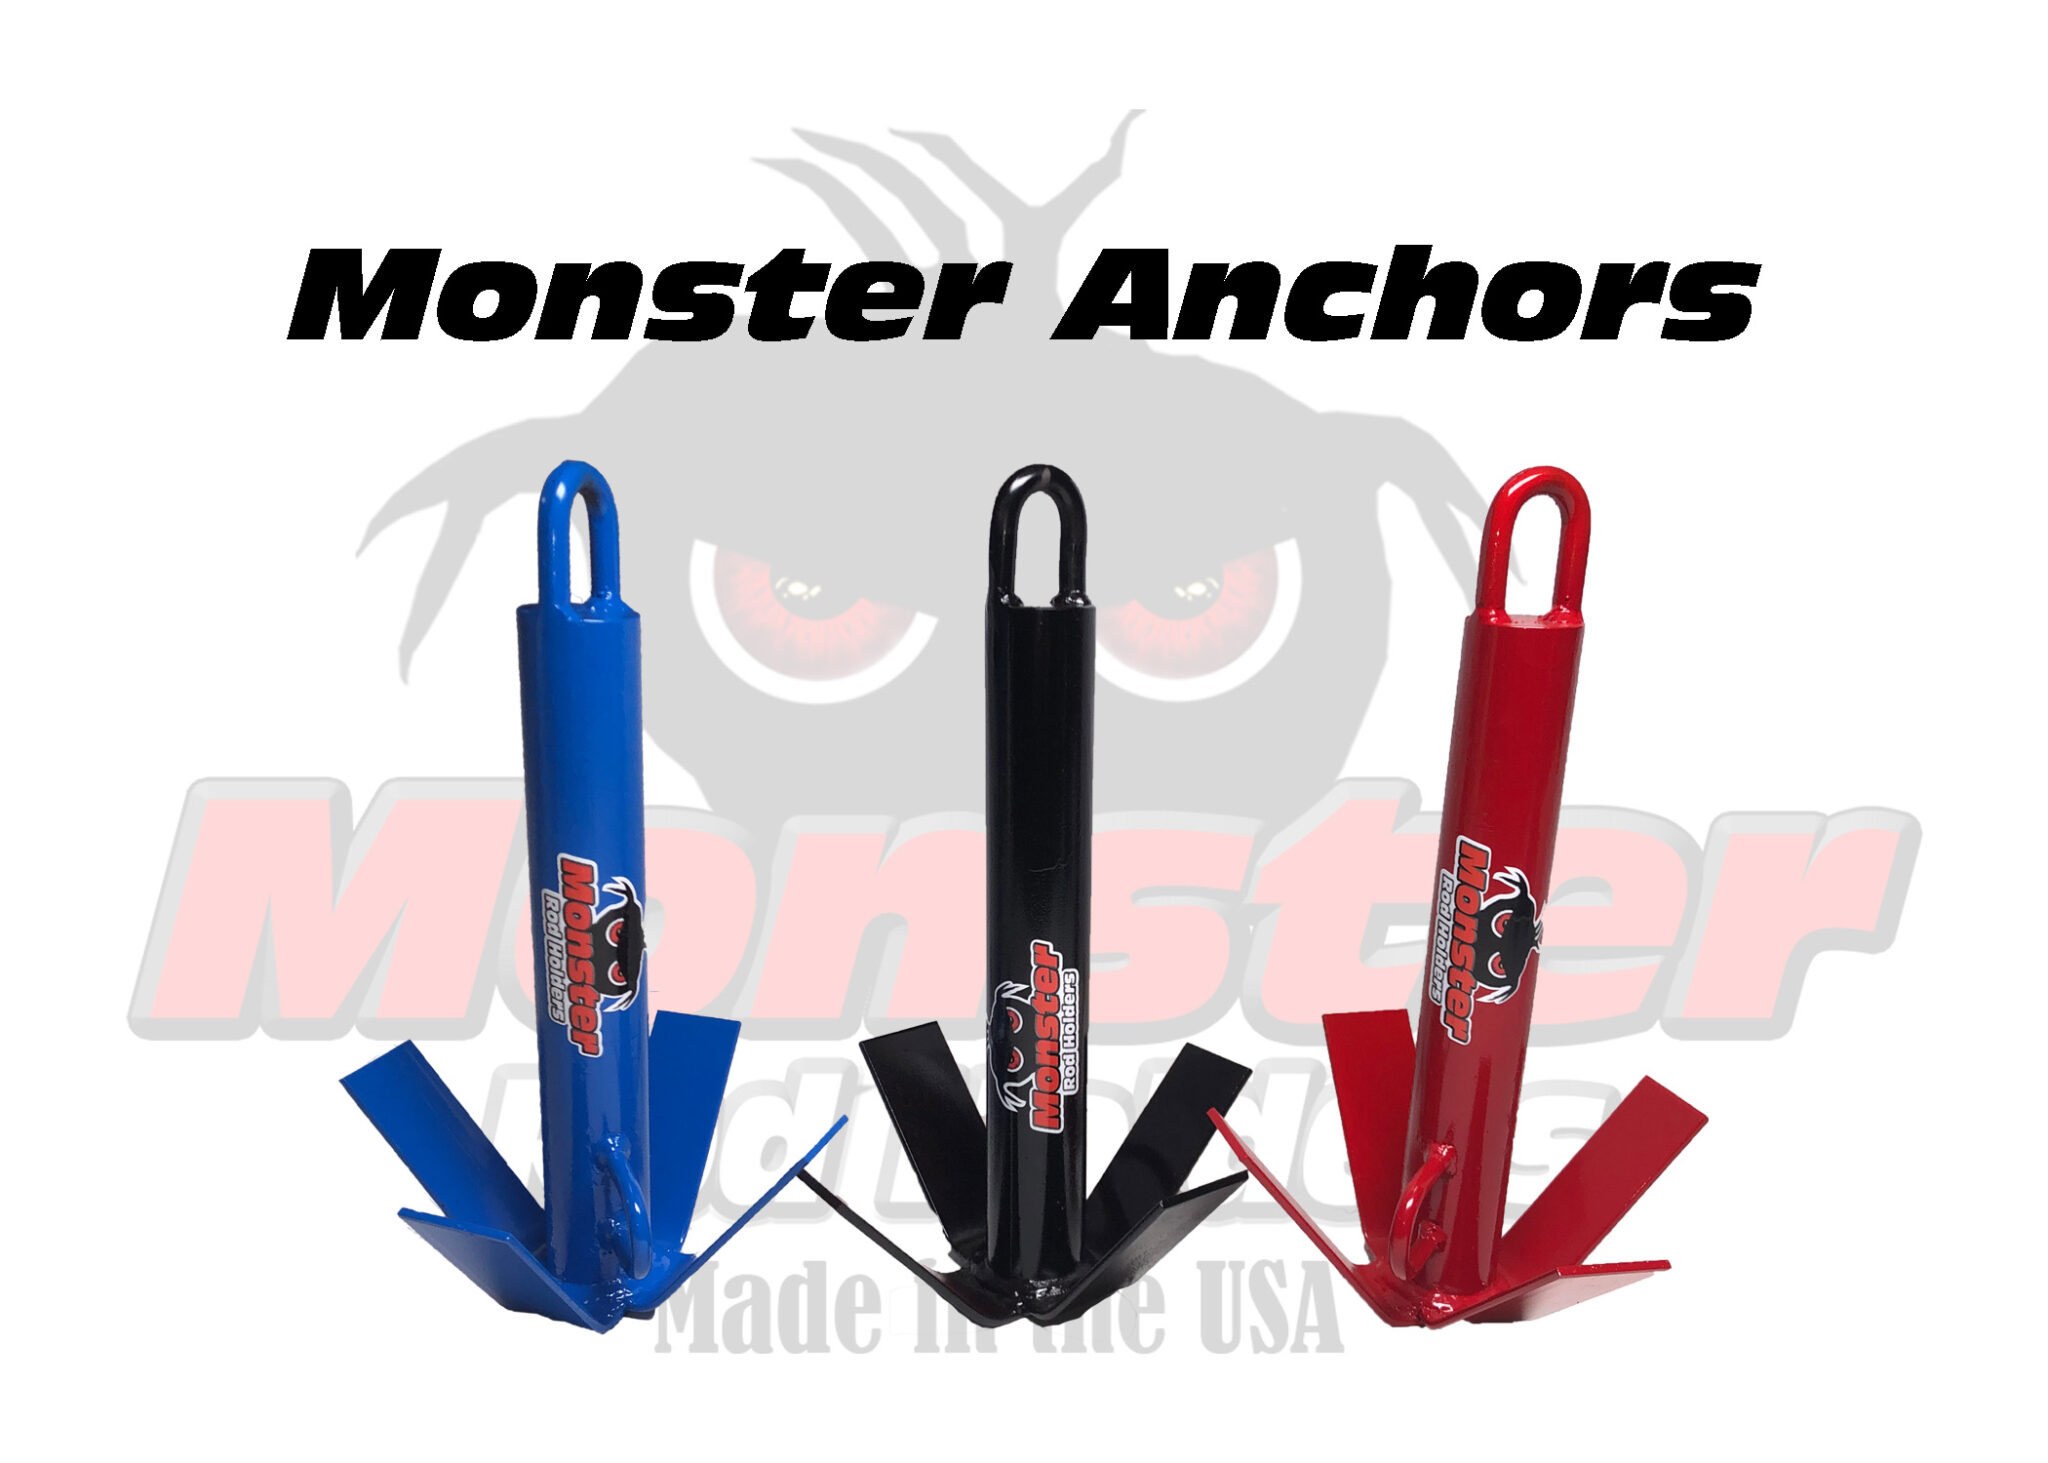 Monster Anchors